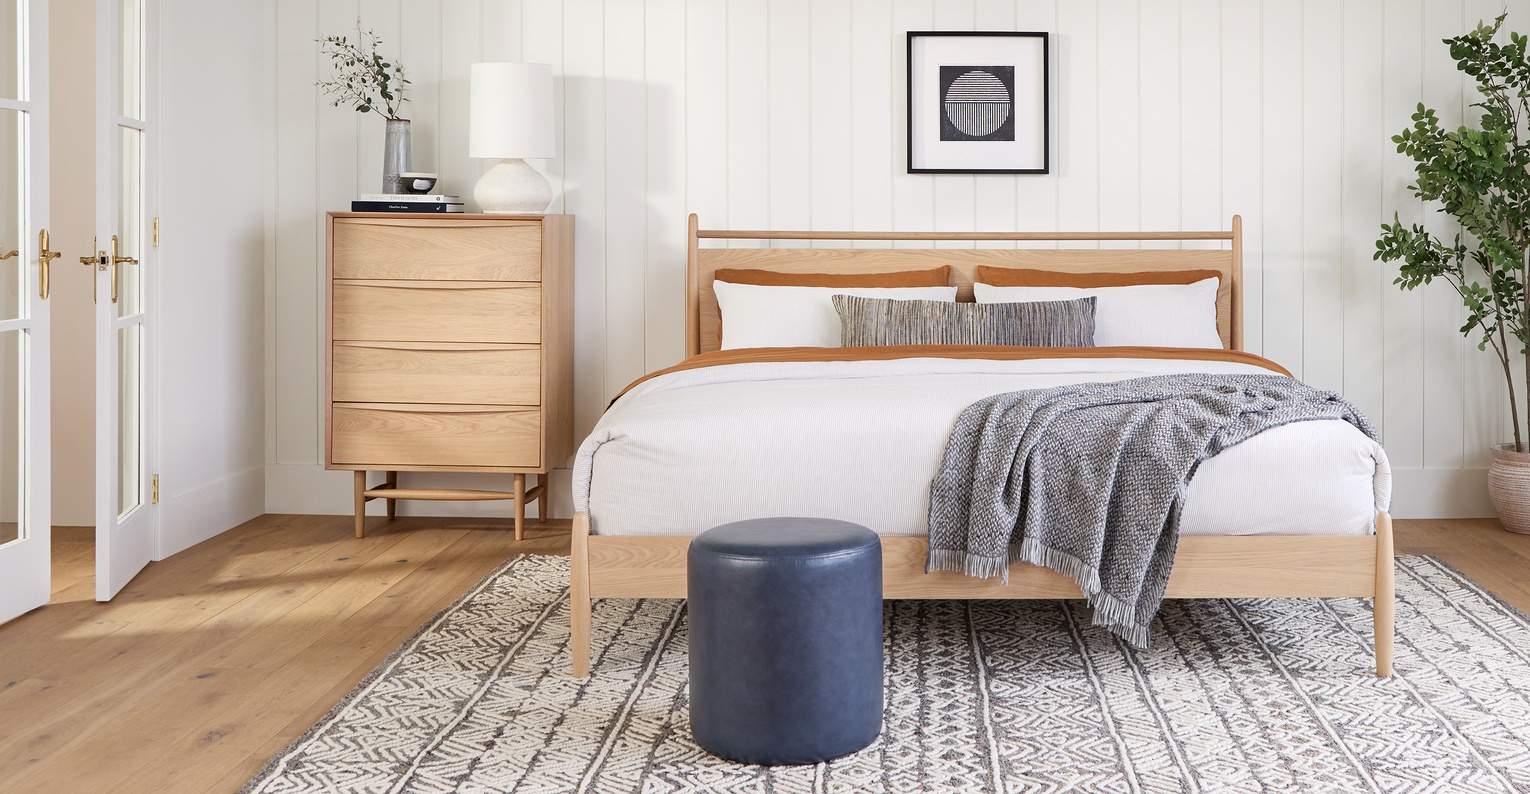 Thiết kế giường gỗ Sồi (Oak) với màu sắc bắt mắt, đảm bảo thẩm mỹ cho không gian phòng ngủ